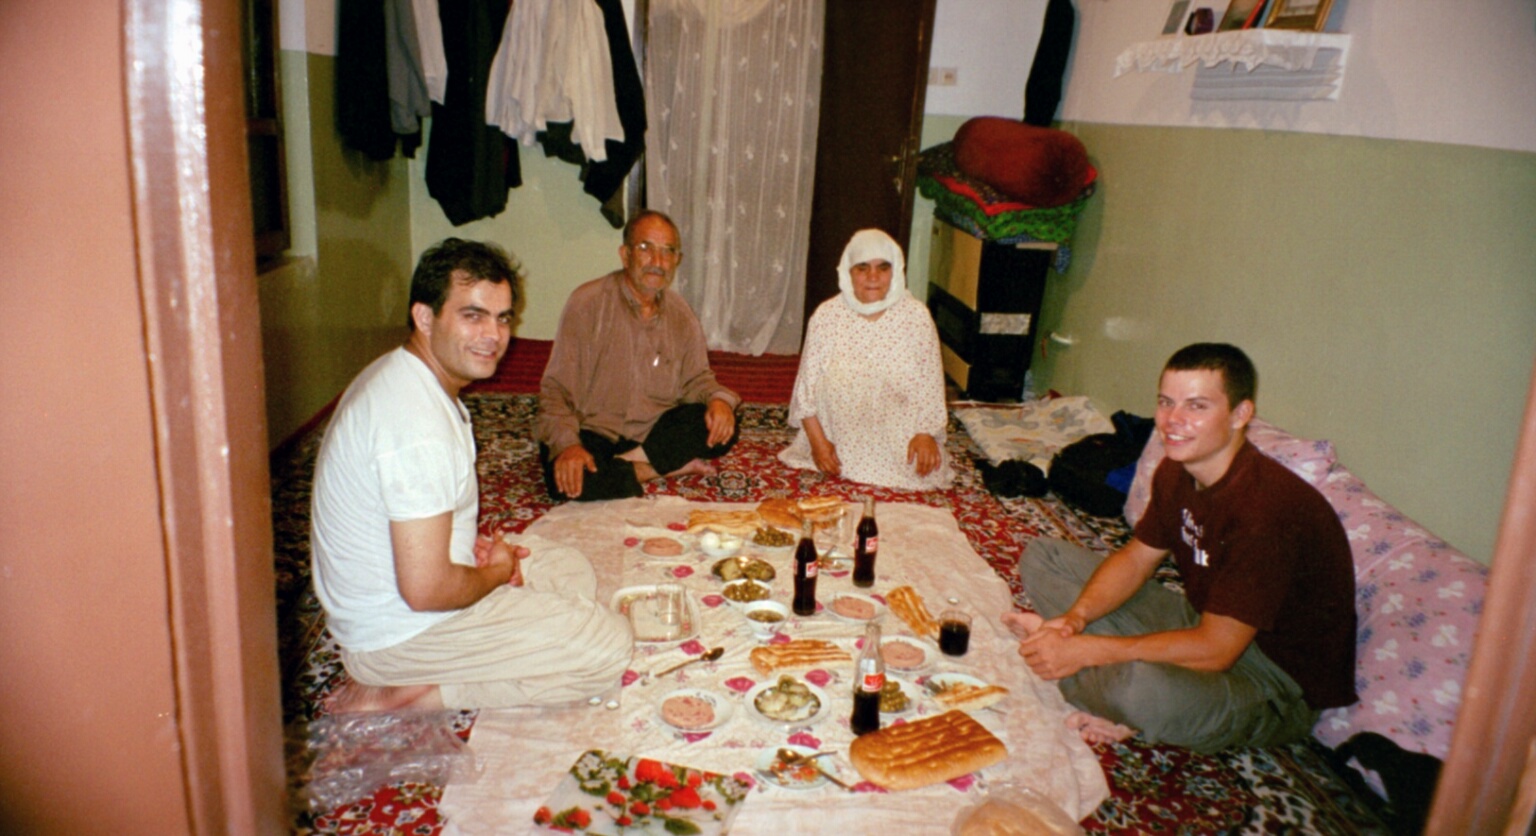 Unser Gastgeber Nader Asgar mit seinen Eltern, einem reizenden Ehepaar